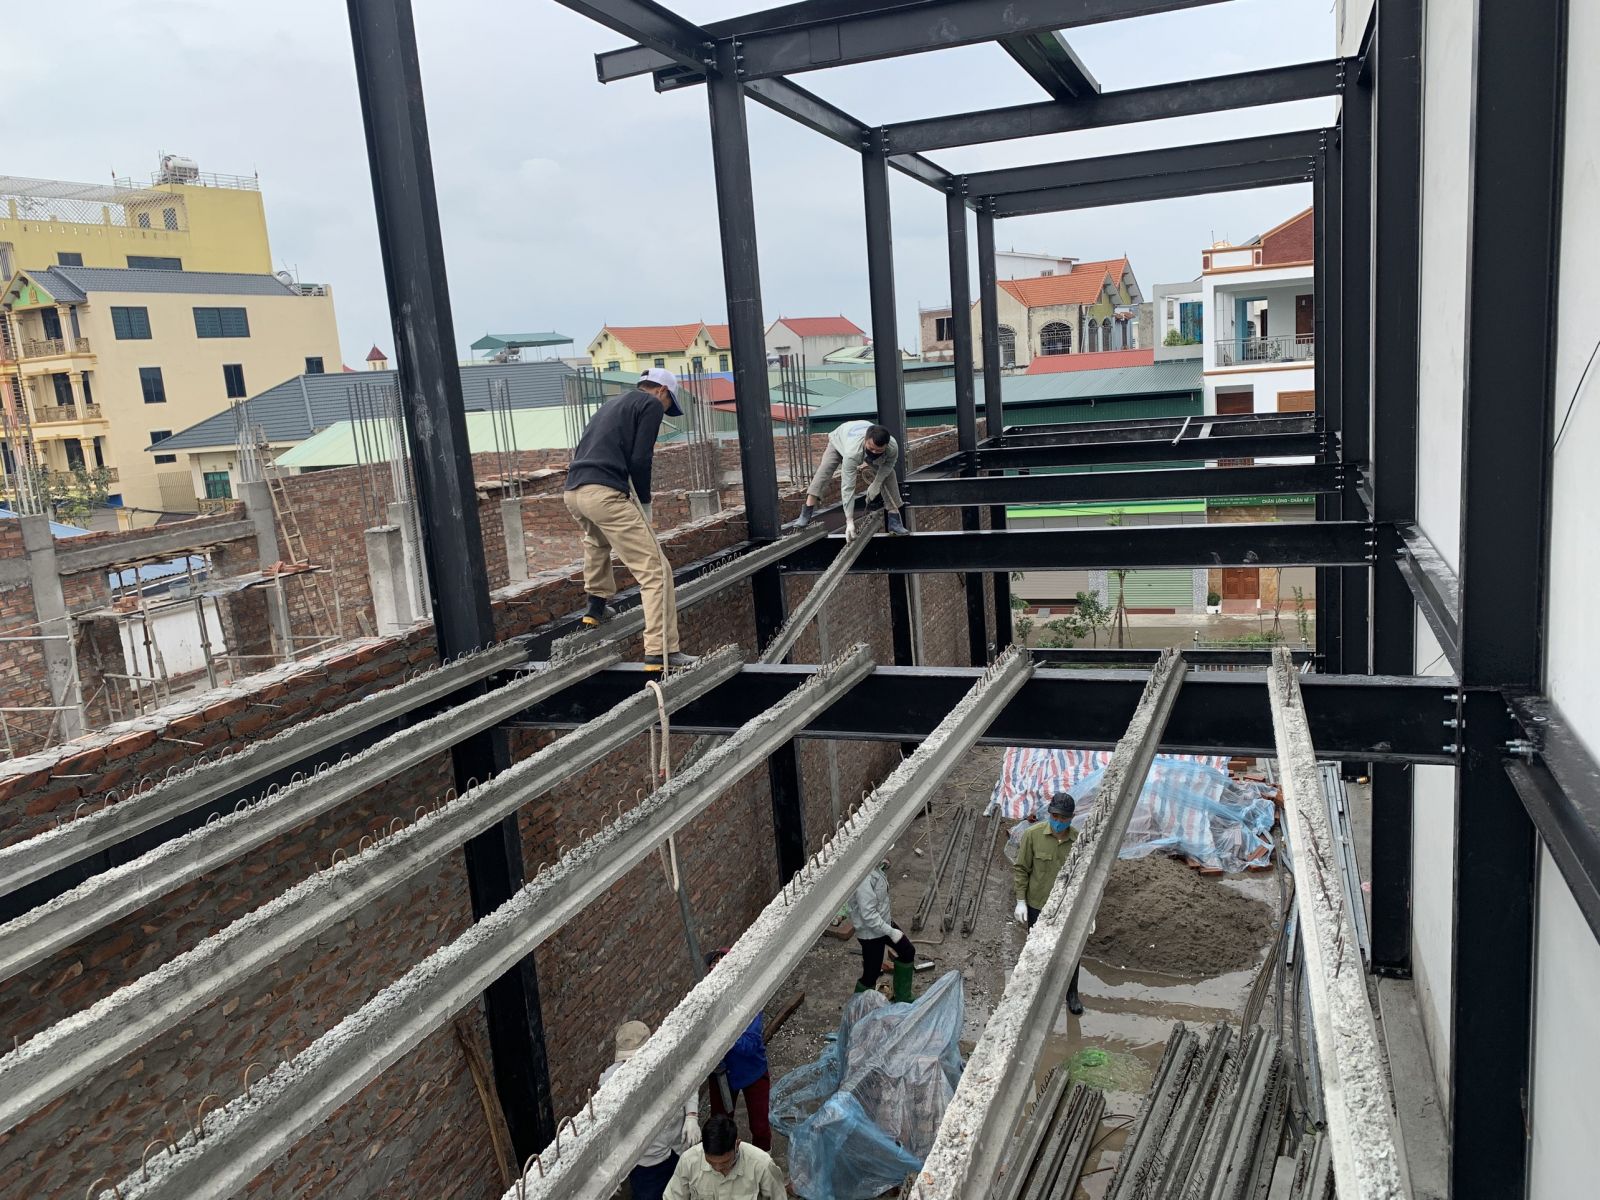 Nhà  Thép Toàn Cầu – Sửa chữa nhà tiền chế tại Đà Nẵng